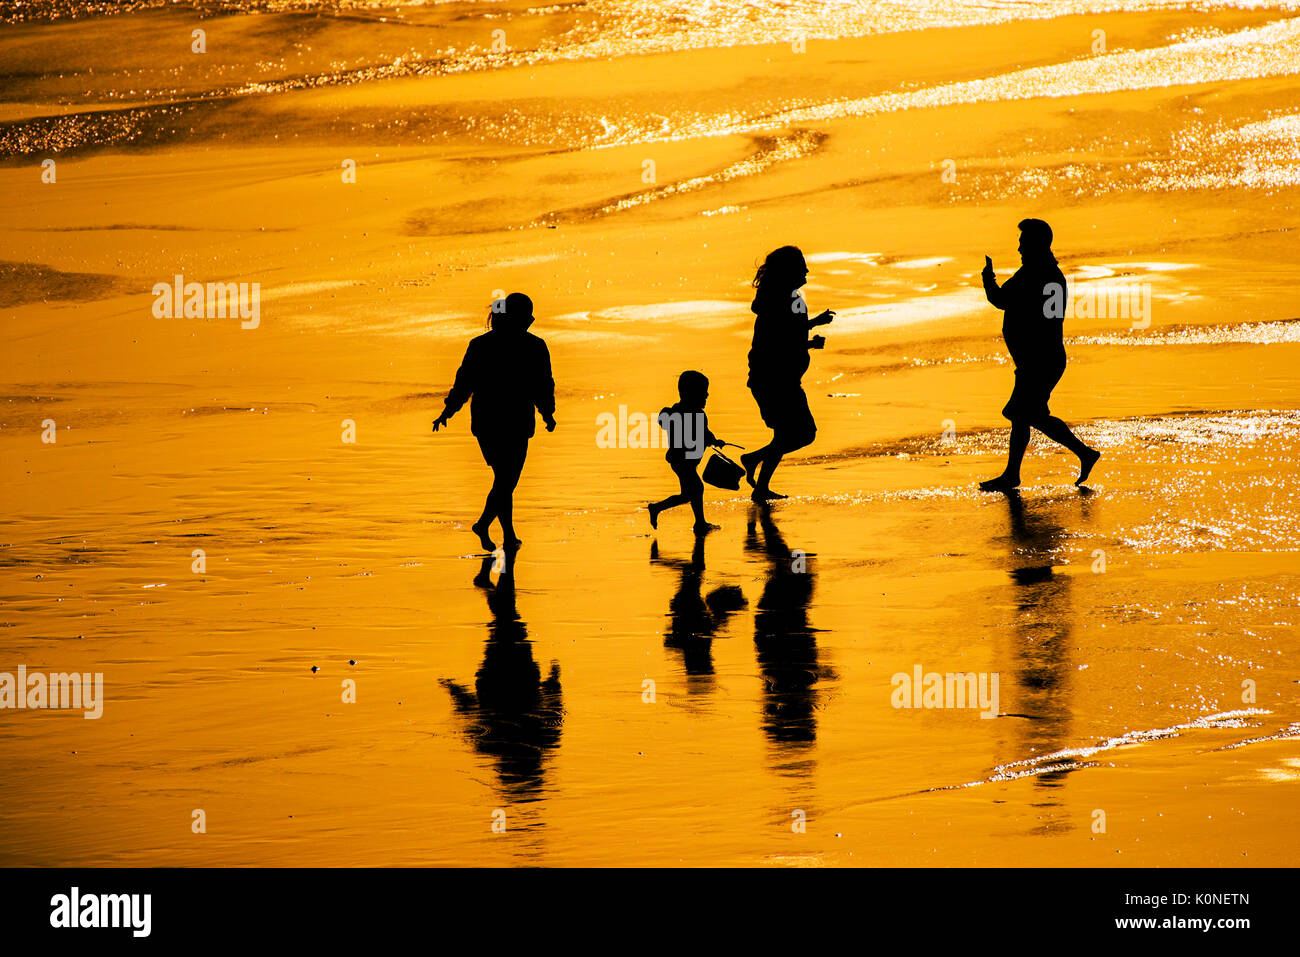 La silhouette di una famiglia di vacanzieri che si diverte sulla spiaggia al tramonto. Foto Stock